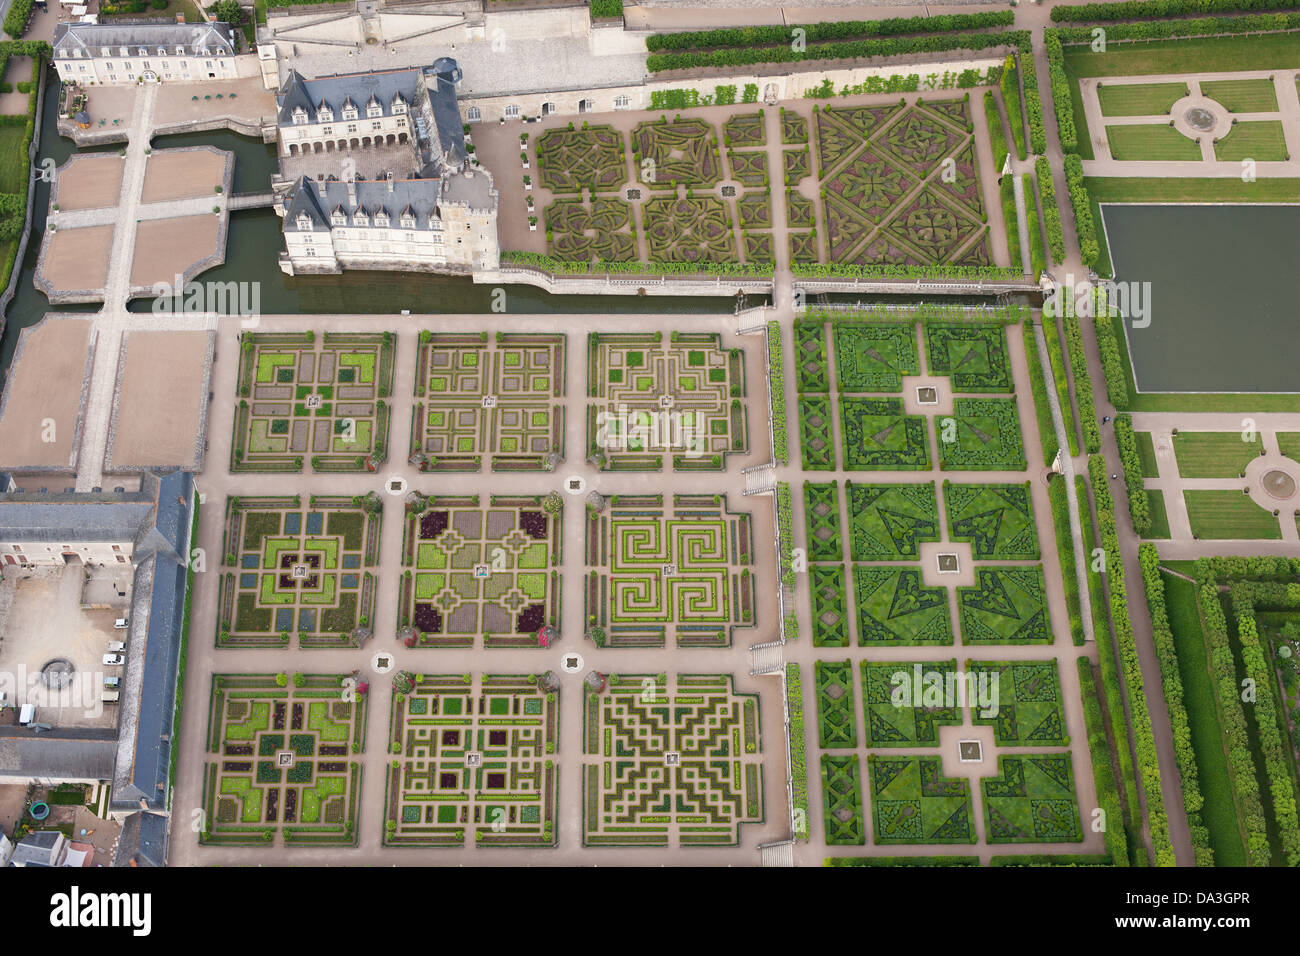 LUFTAUFNAHME. Schloss und Gärten von Villandry. Indre-et-Loire, Centre-Val de Loire, Frankreich. Stockfoto